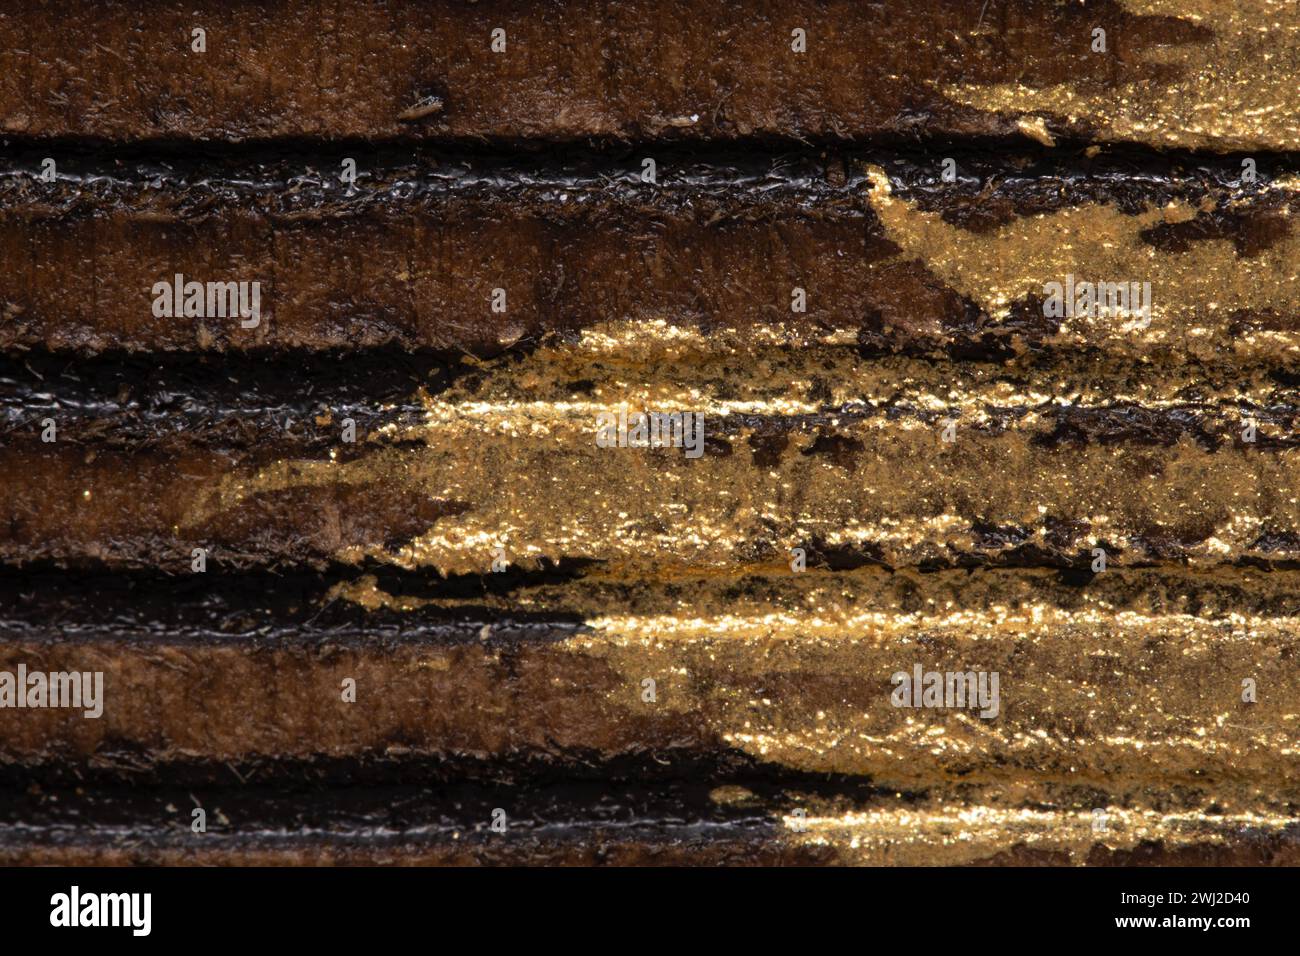 Questa immagine presenta uno scatto ravvicinato di una superficie testurizzata con strisce dorate e nere alternate, che mostrano dettagli intricati e una lucentezza metallica. Foto Stock